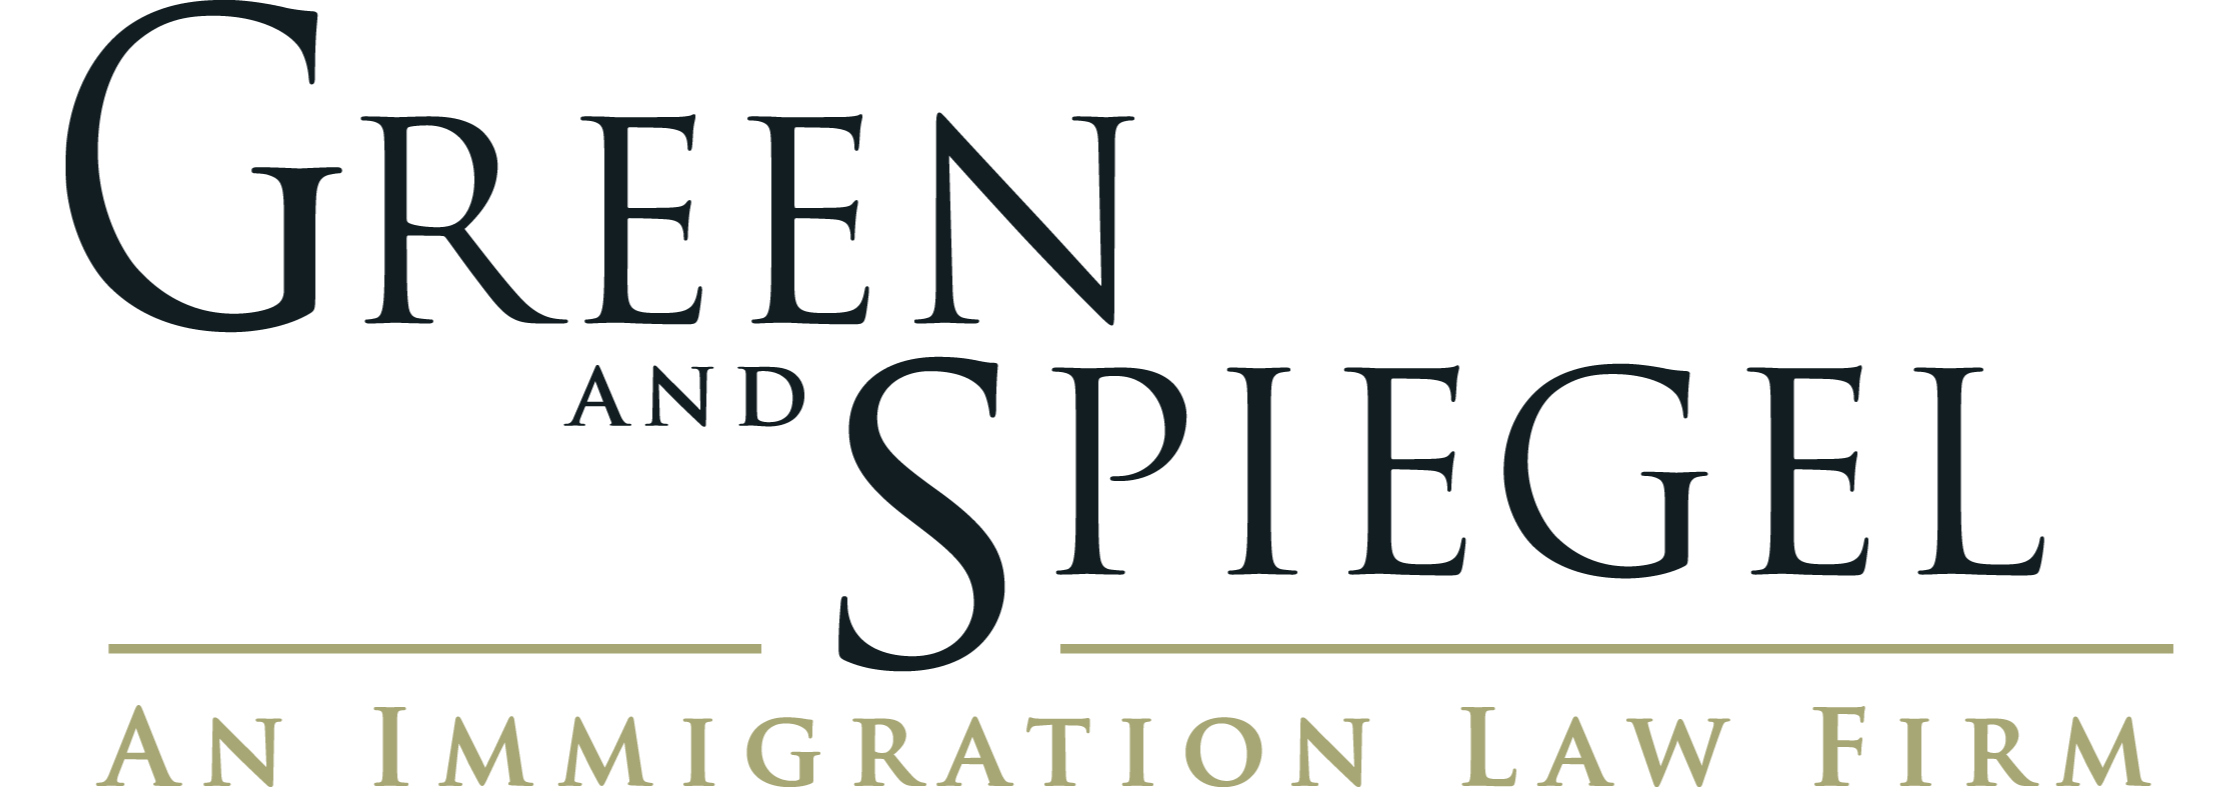 Abogados de Inmigración de Estados Unidos | Green and Spiegel